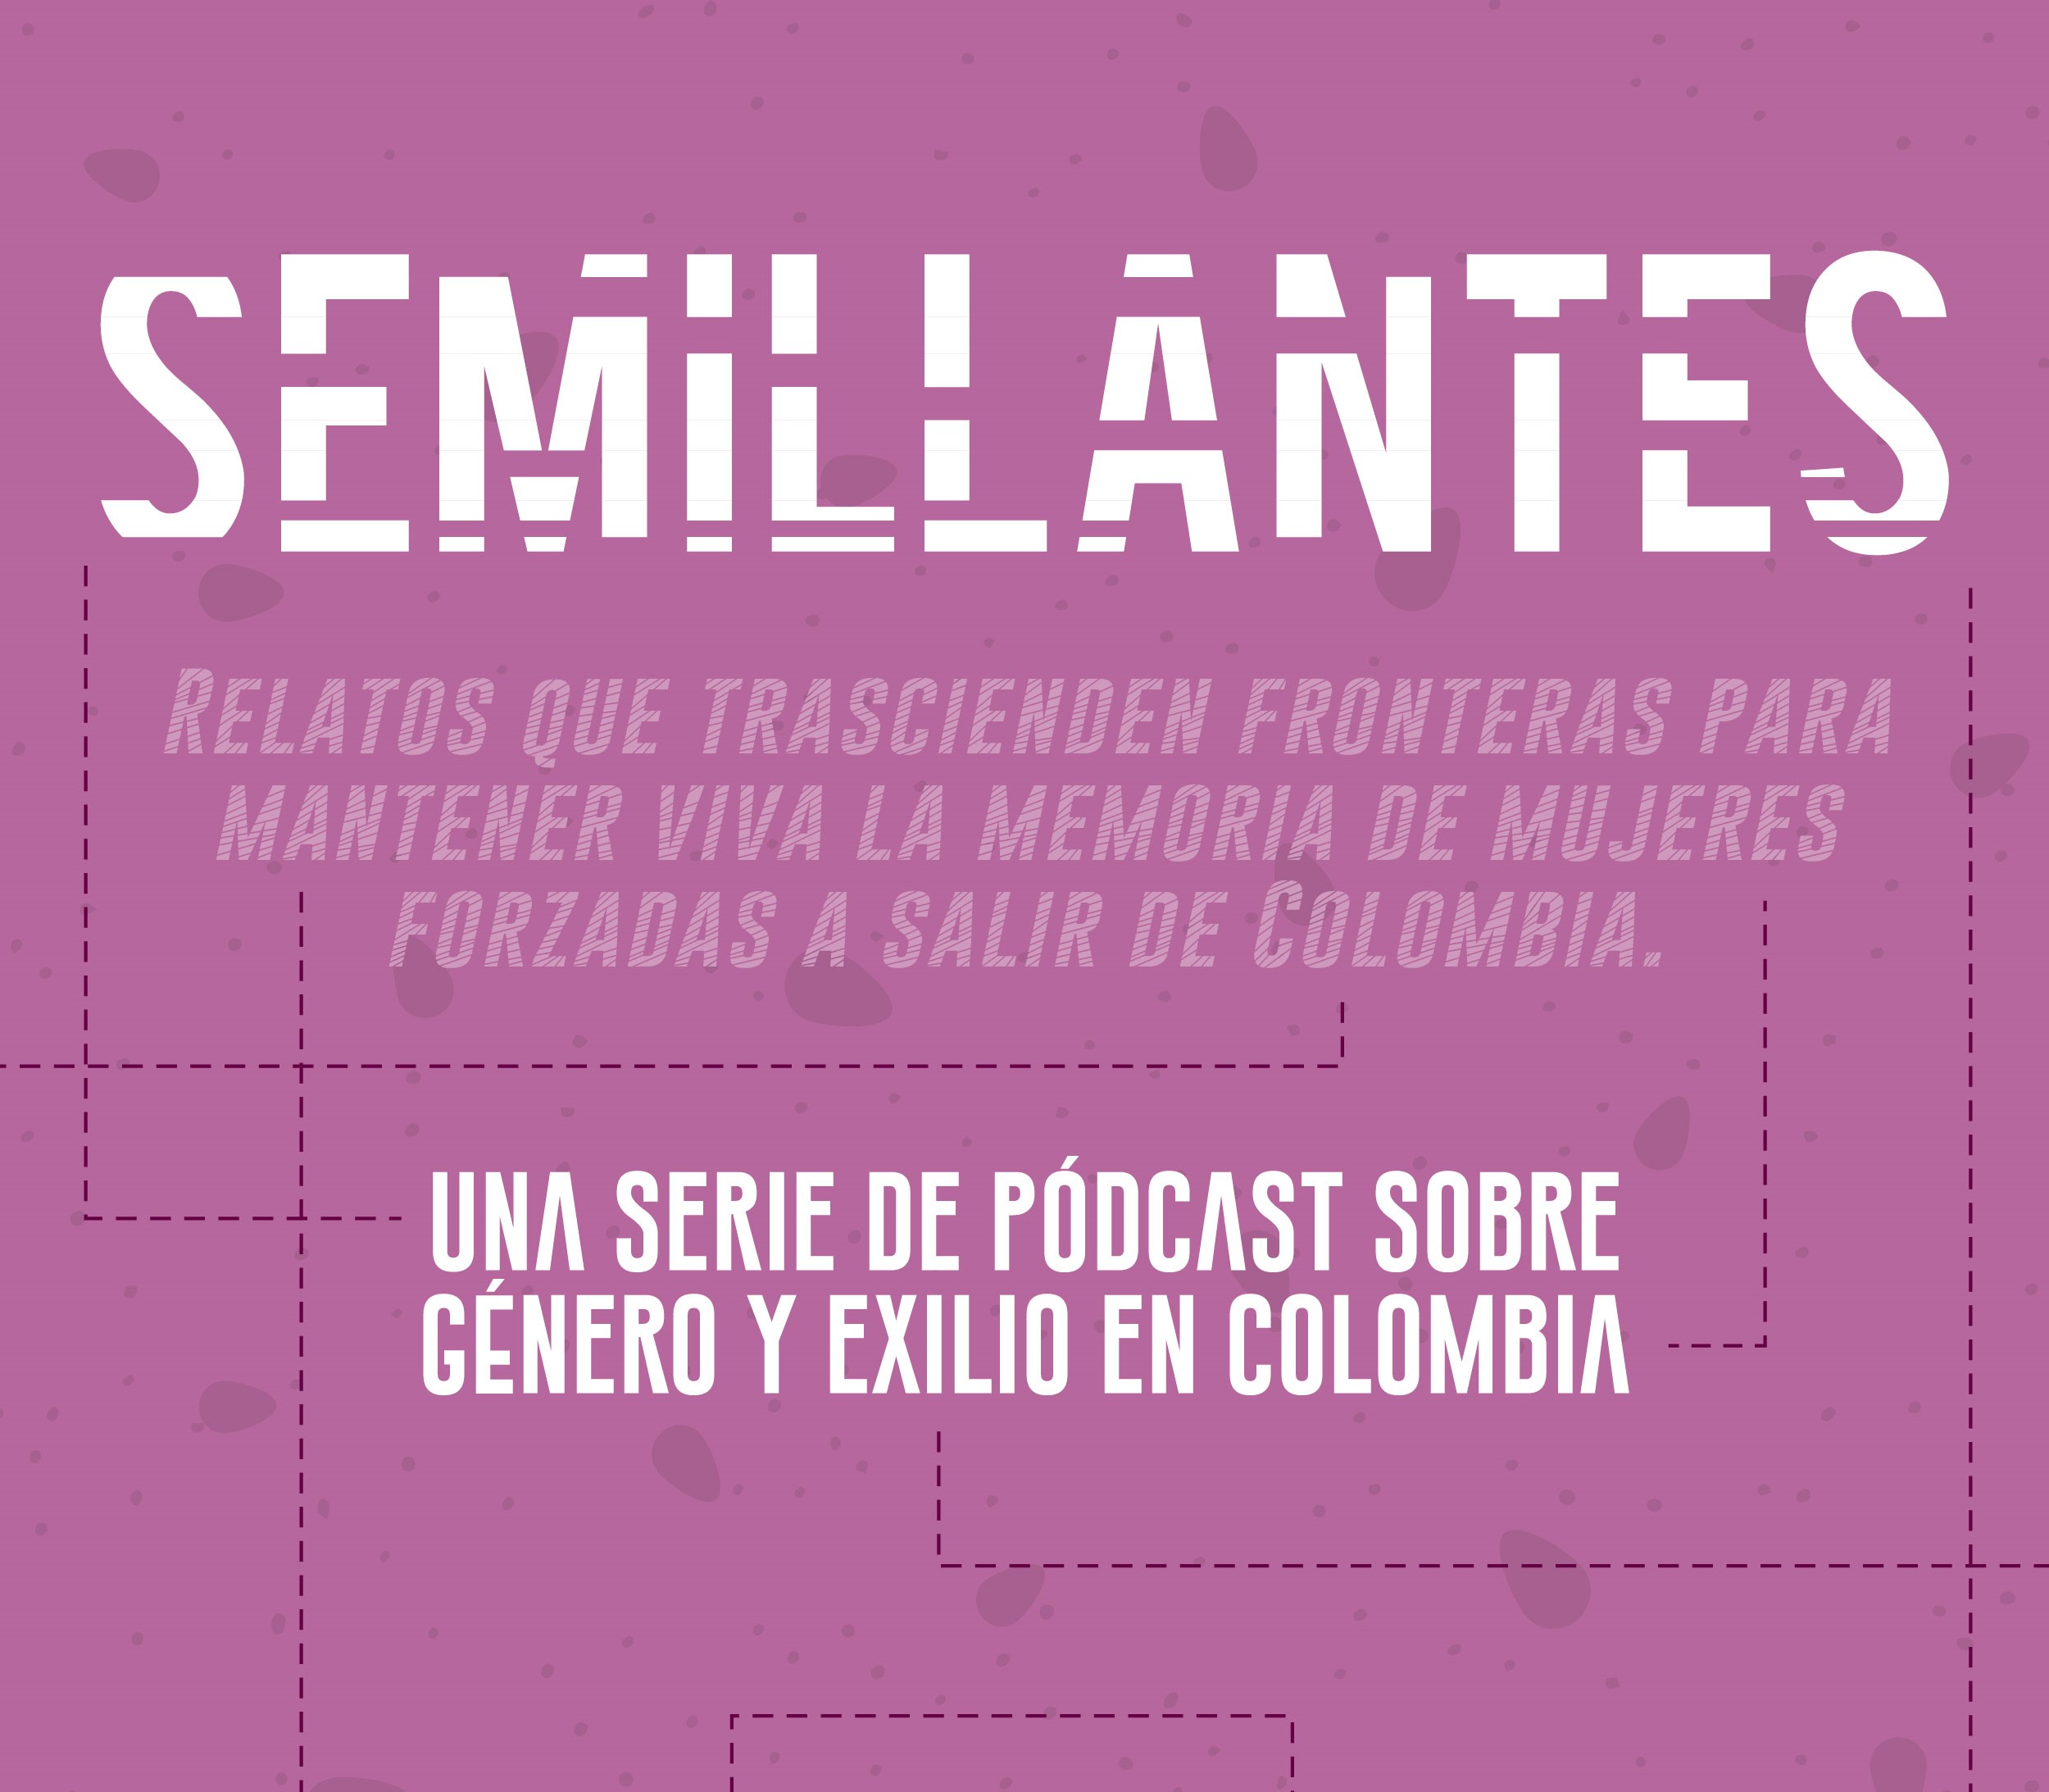 El ICIP estrena una serie de podcasts sobre mujeres colombianas exiliadas y en la diáspora